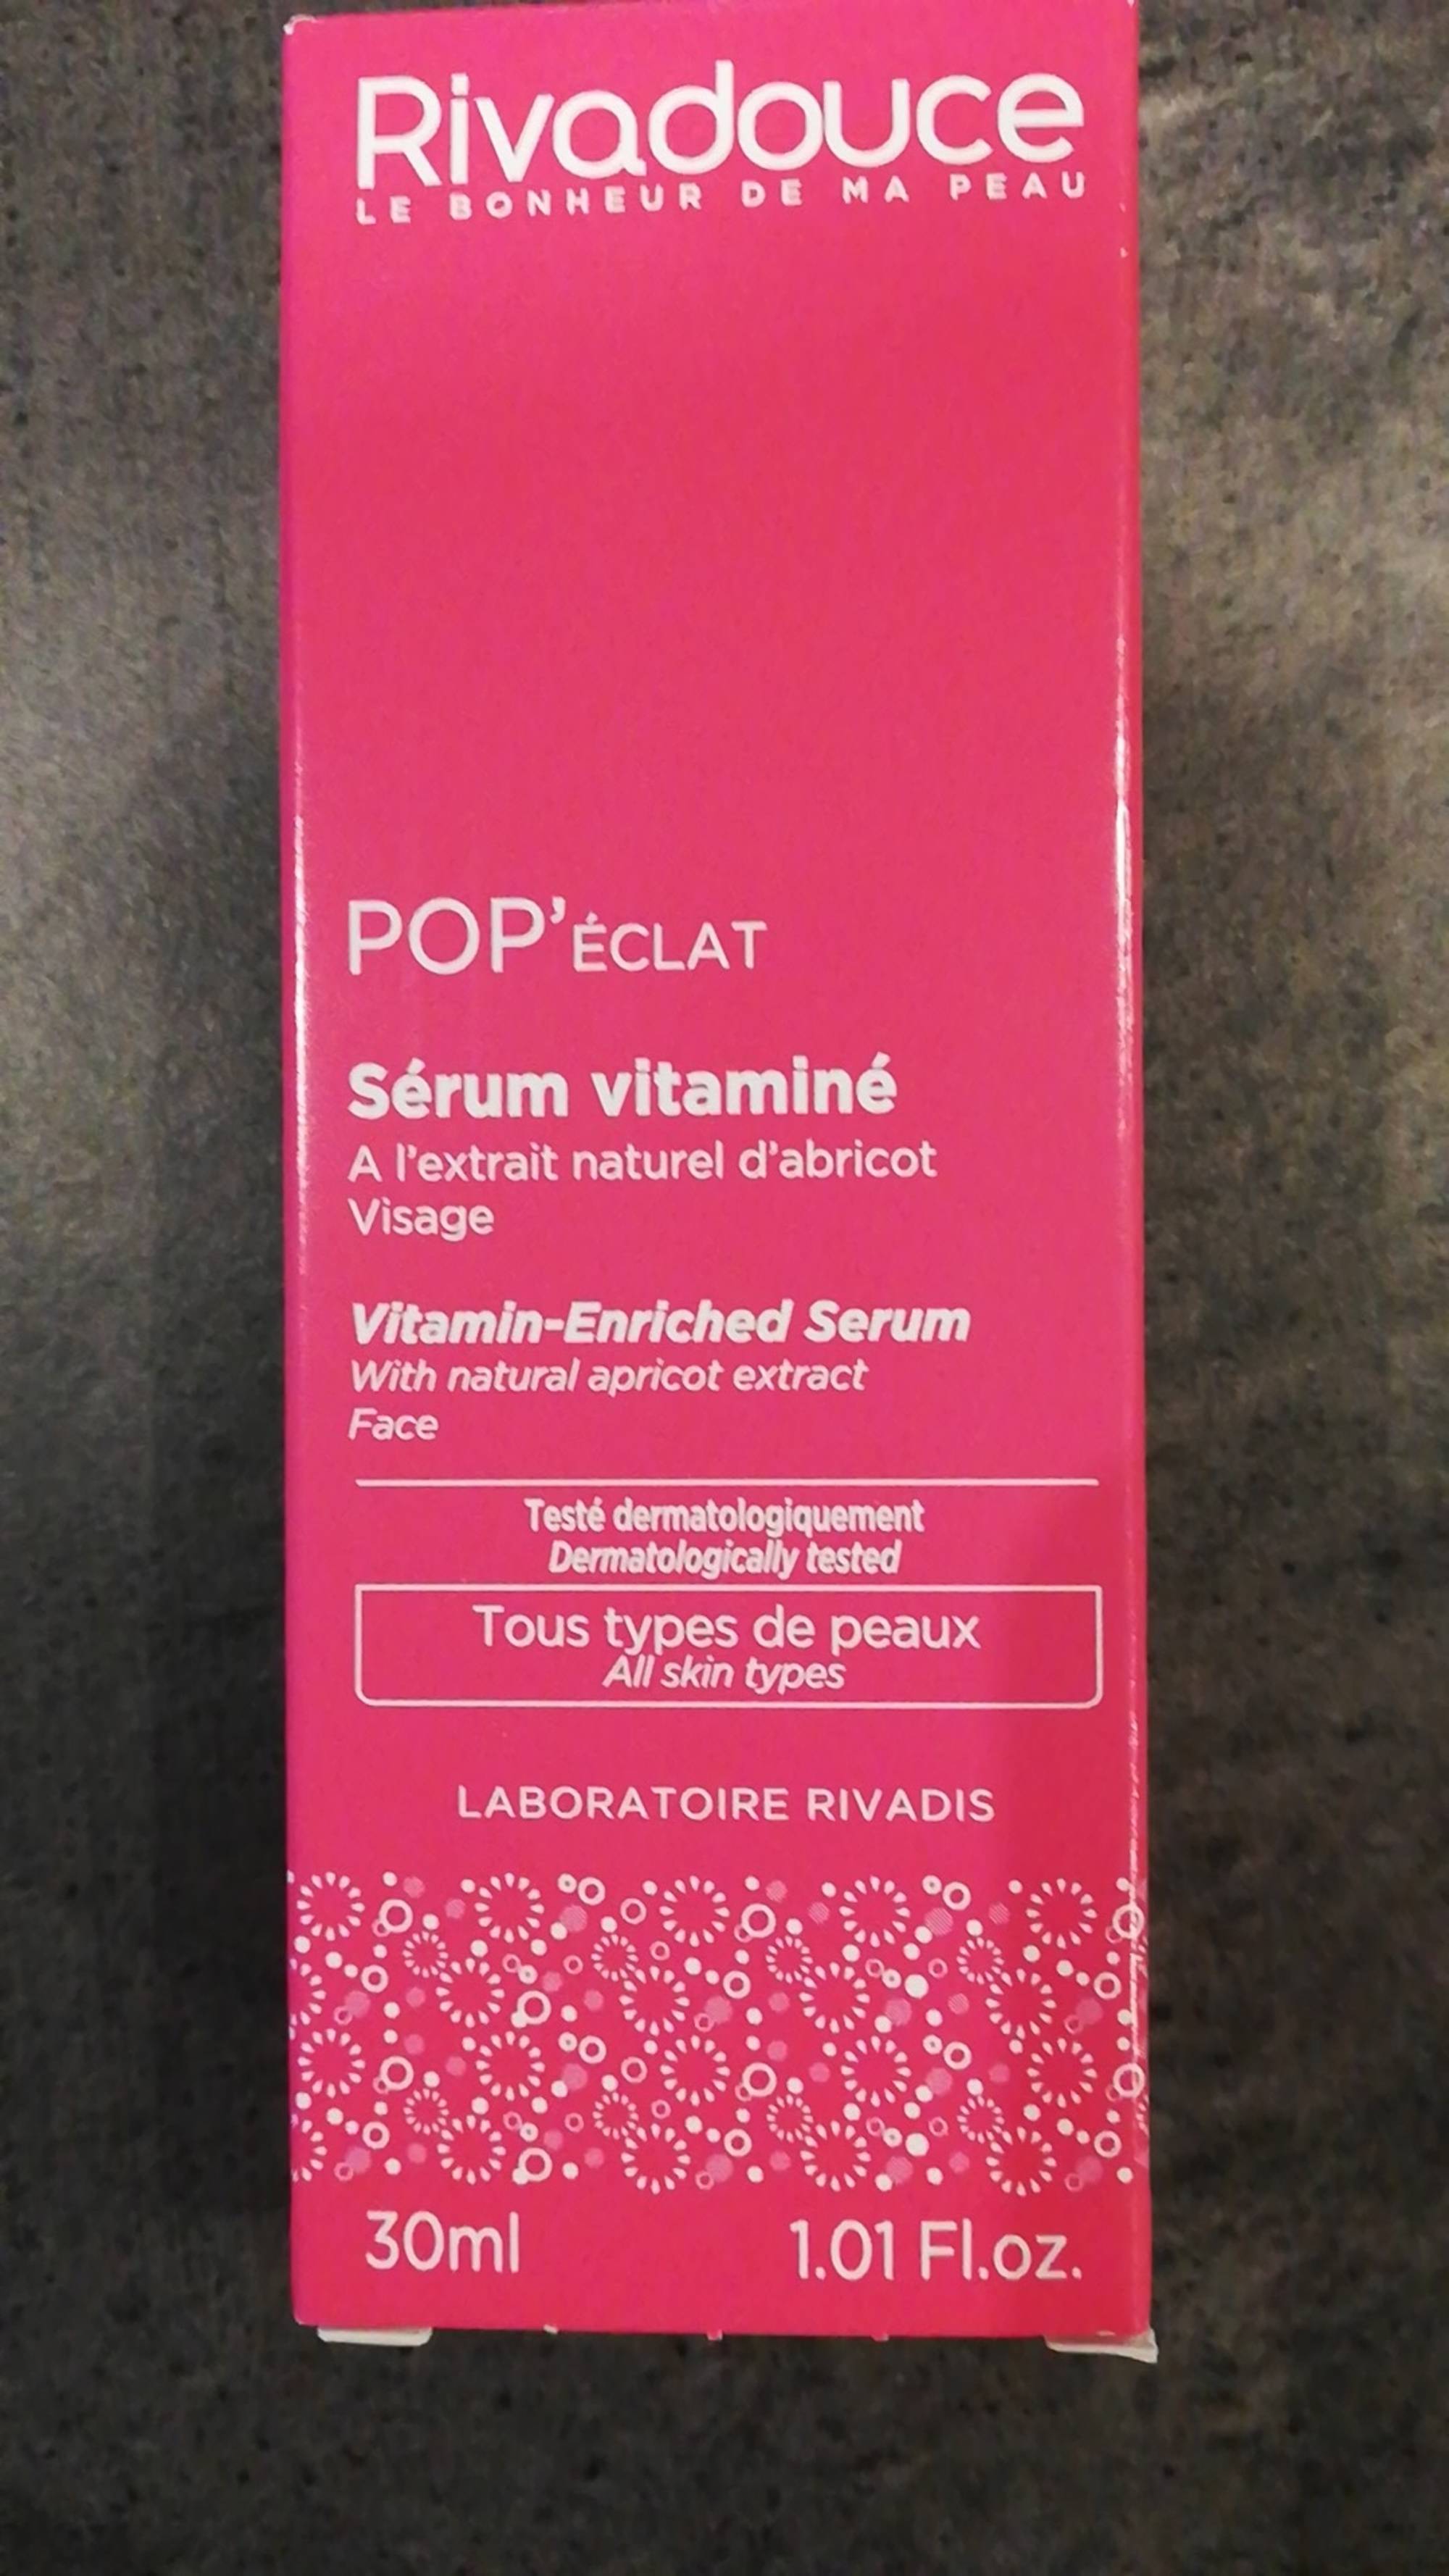 RIVADOUCE - Pop'éclat - Sérum vitaminé